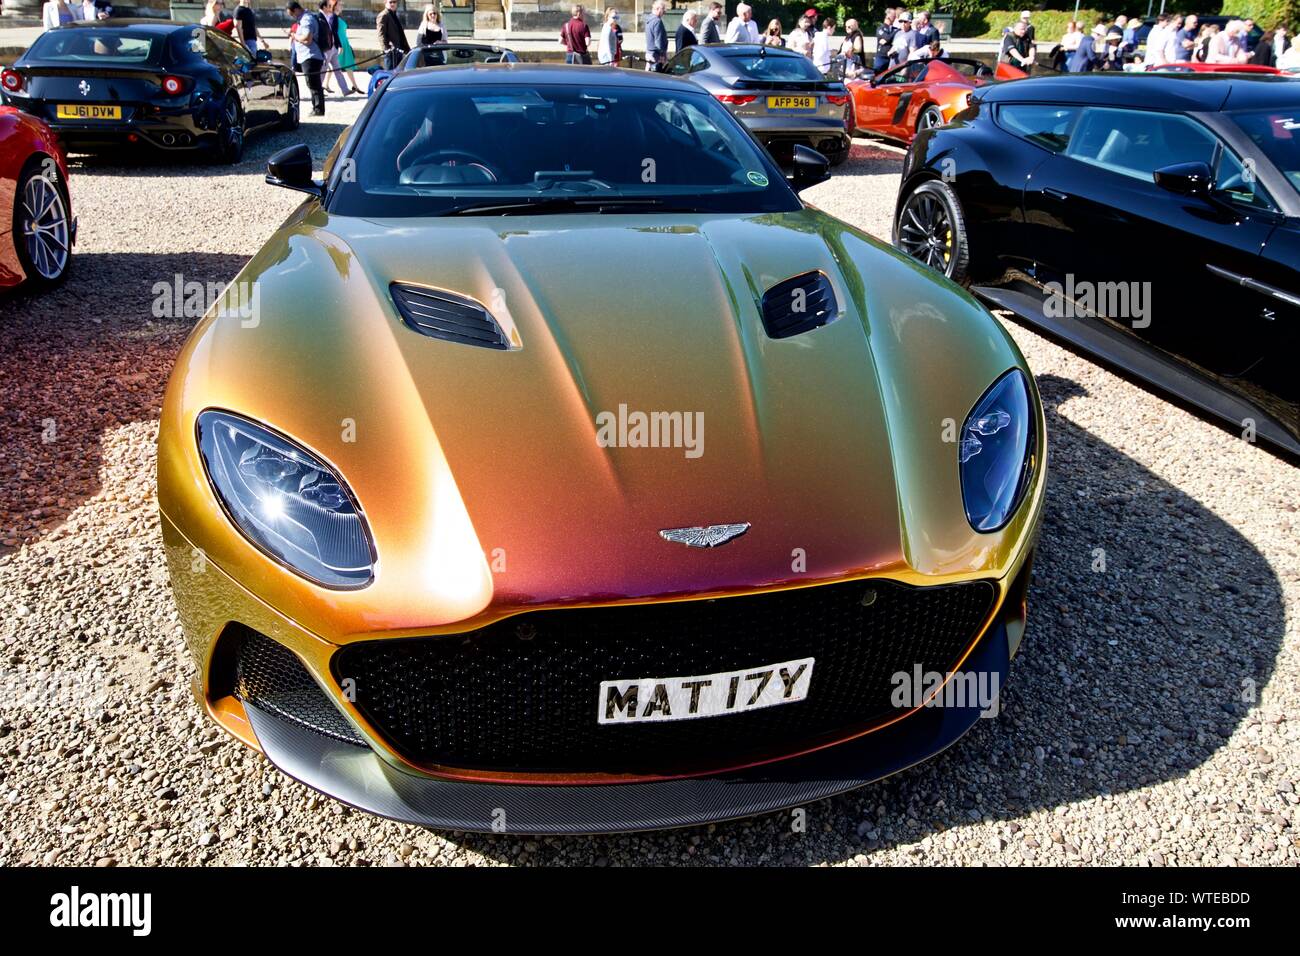 Aston Martin DBS Superleggera sur spectacle au 2019 Concours d'elégance à Blenheim Palace, le 8 septembre 2019 Banque D'Images